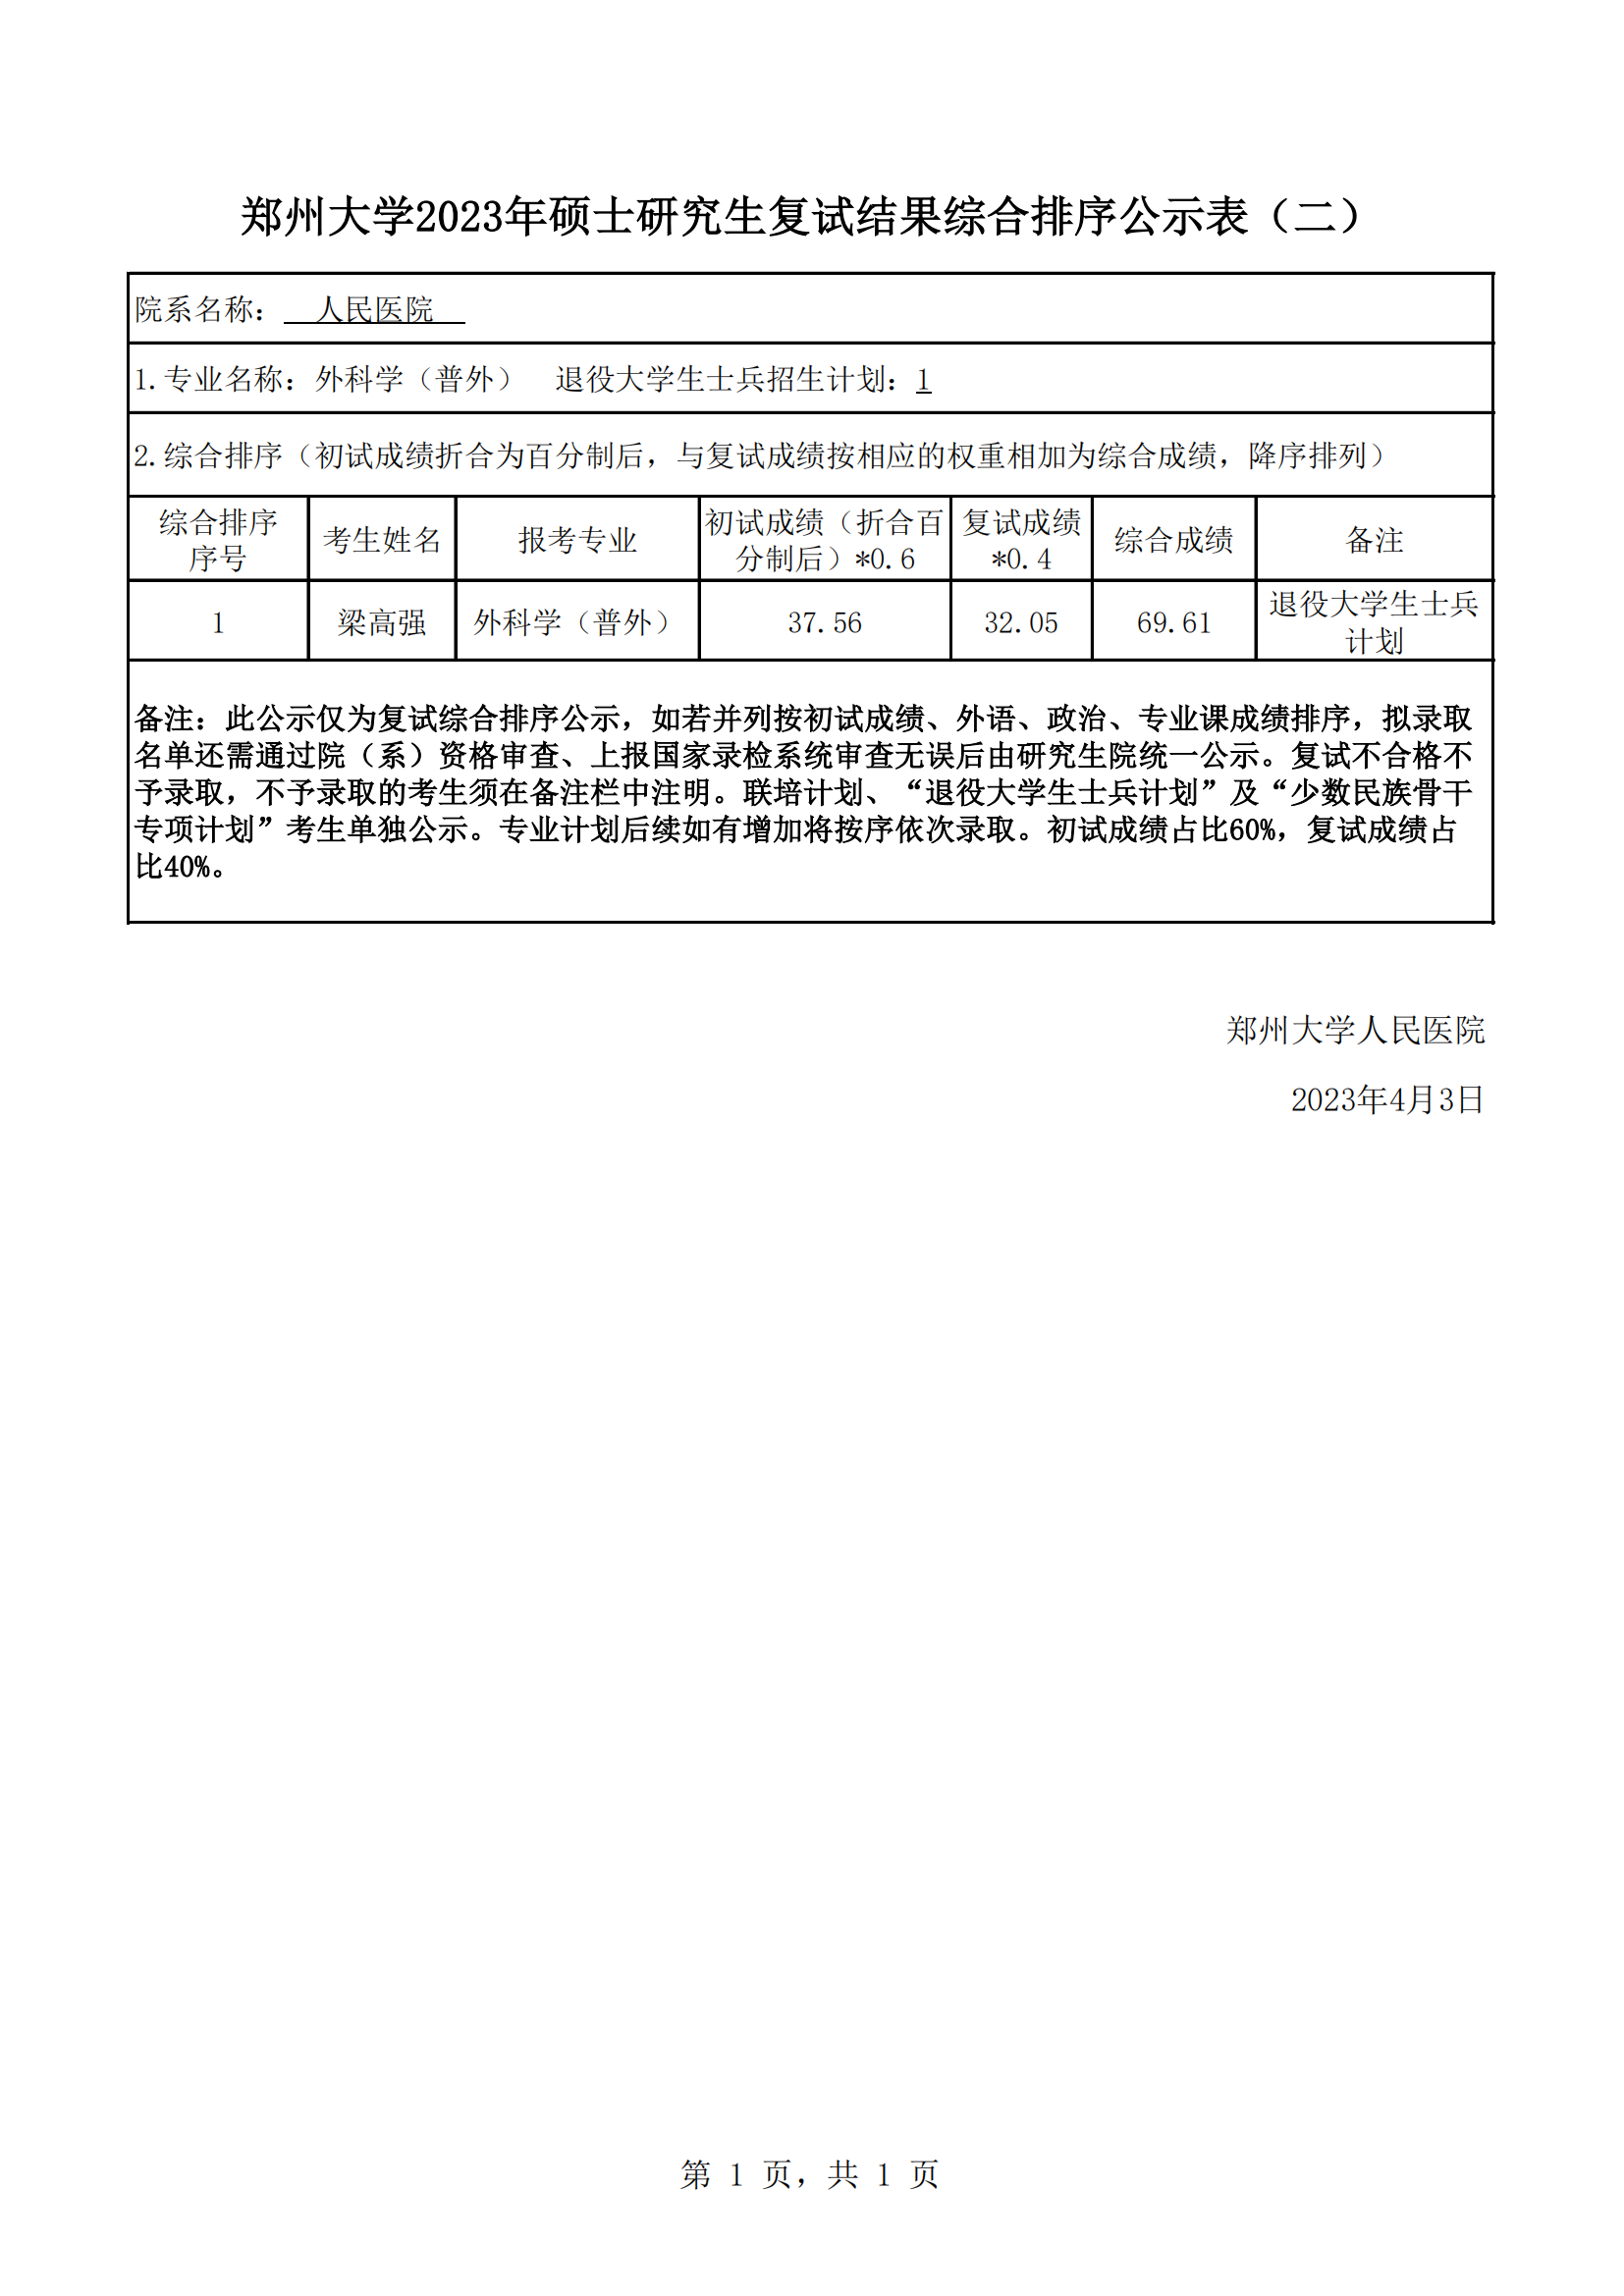 郑州大学人民医院2023年硕士研究生复试结果综合排序公示（二）_00.png